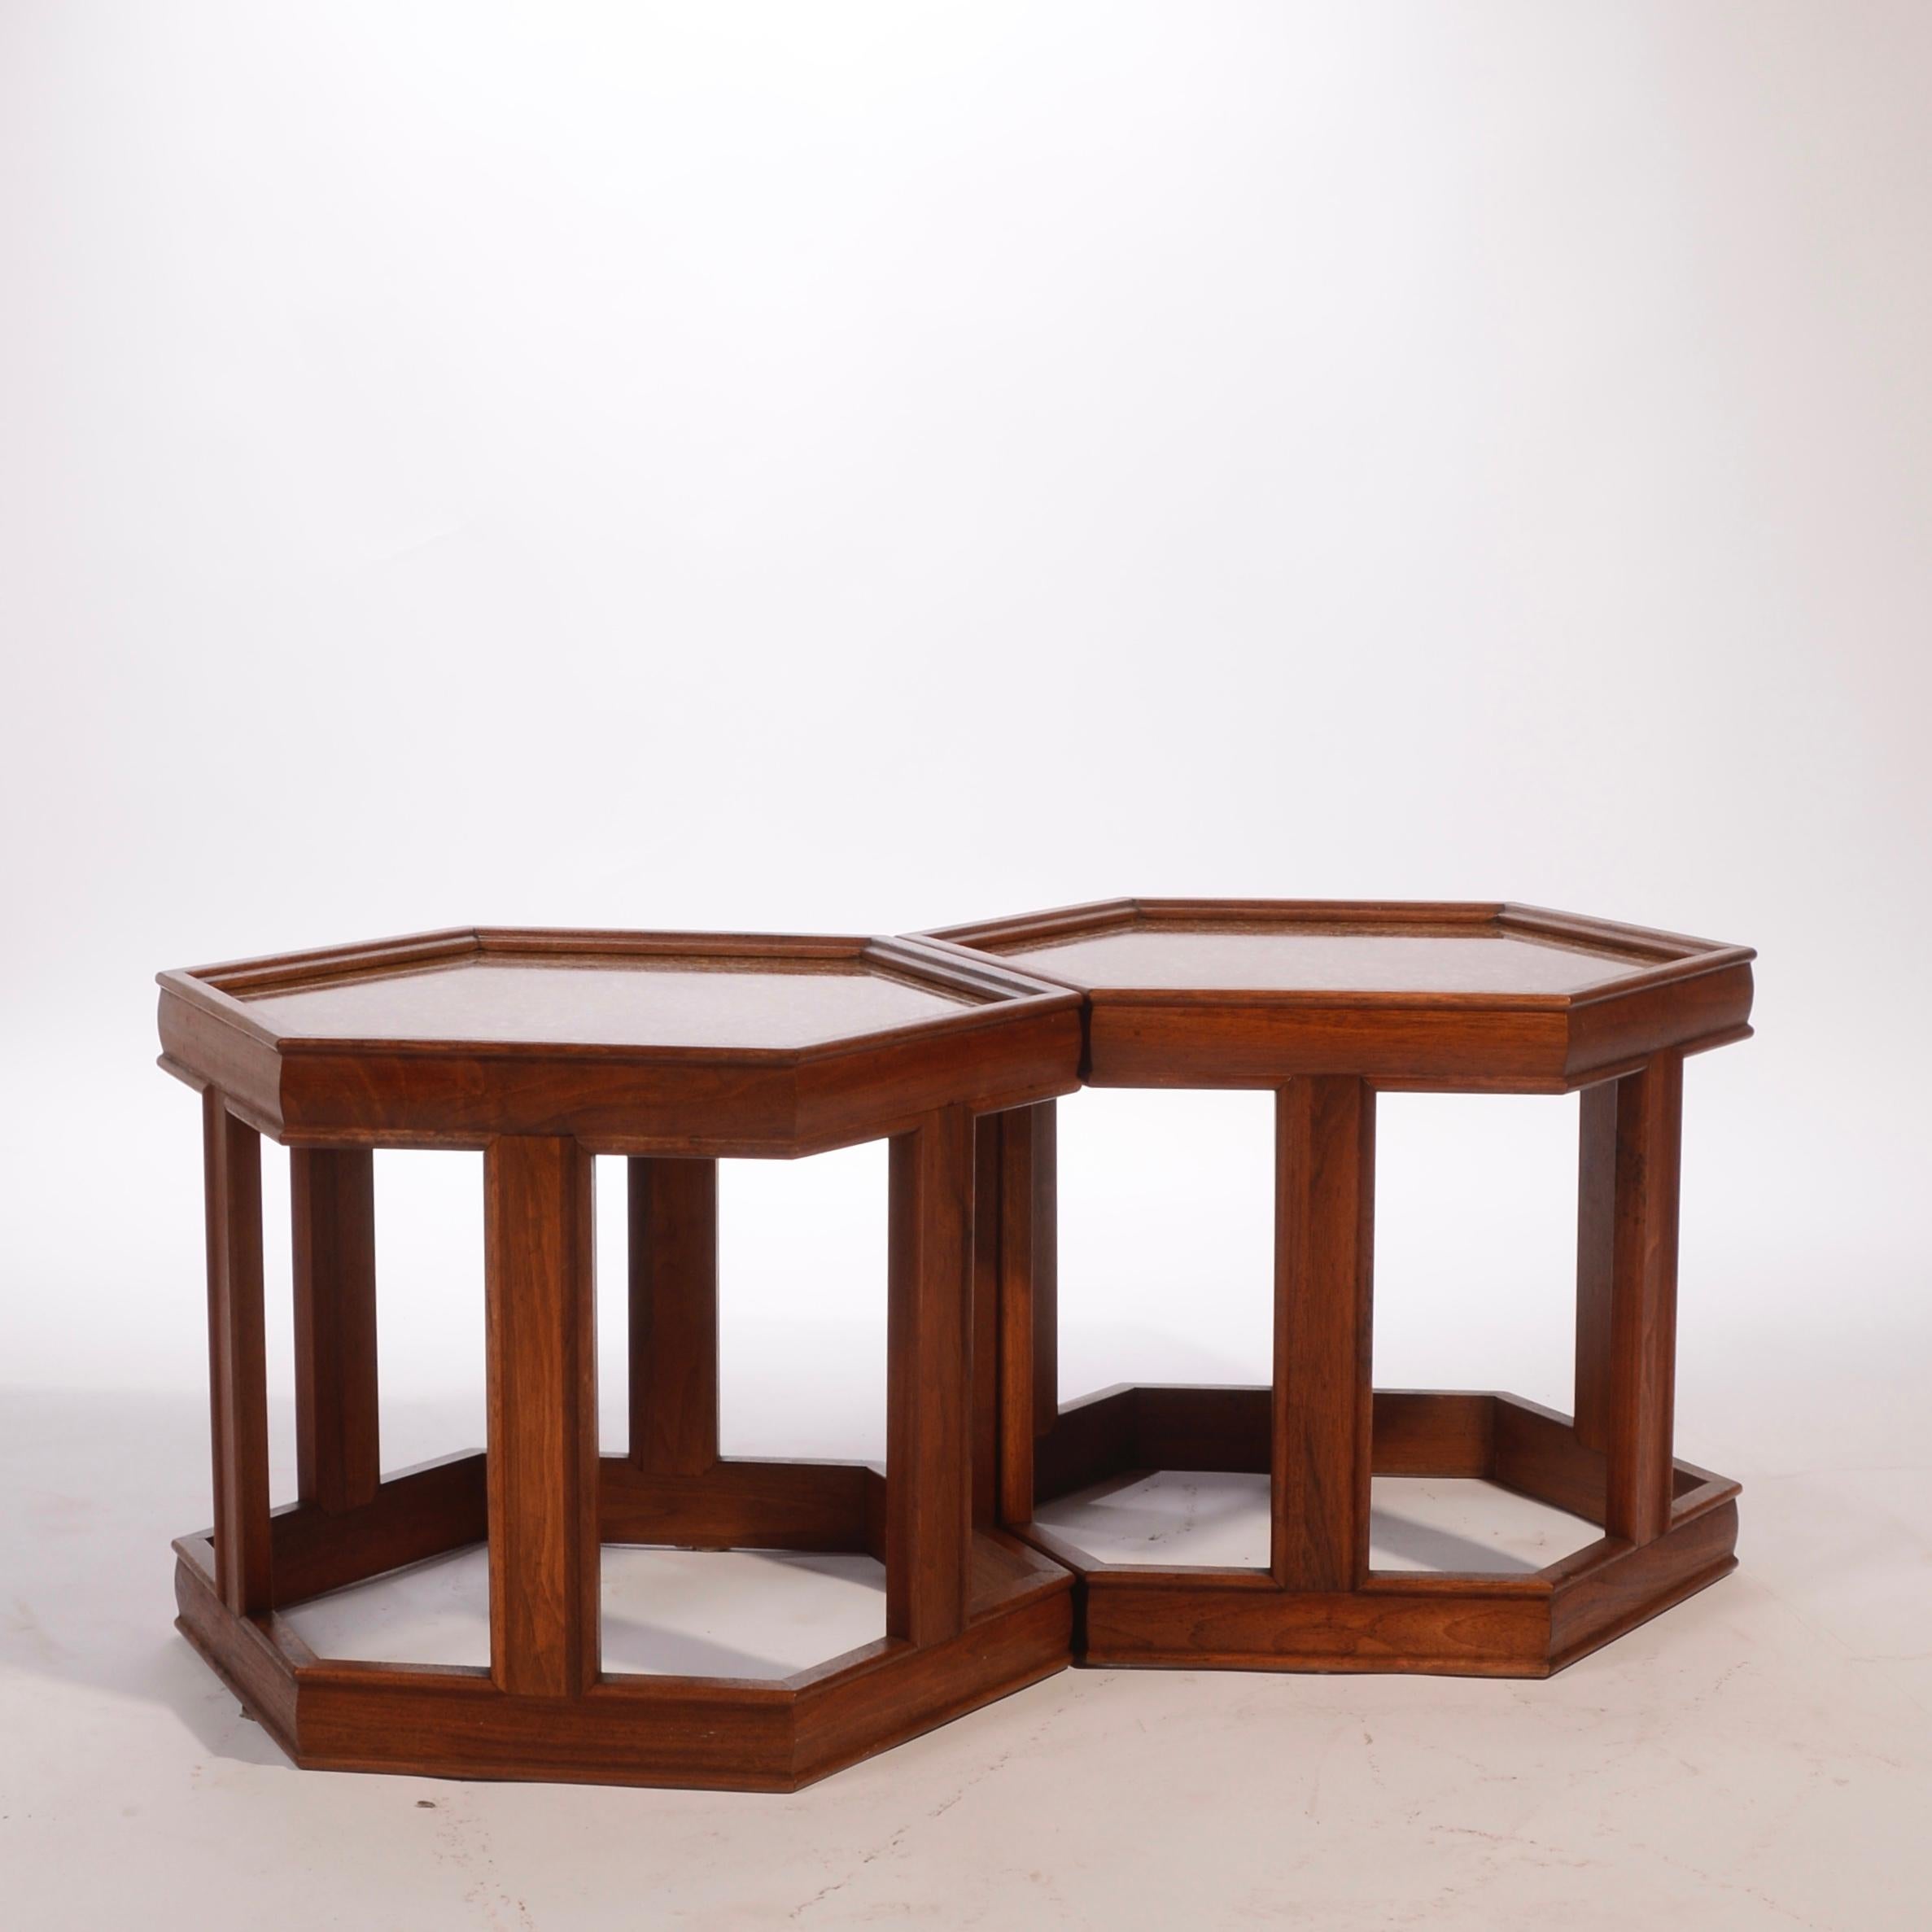 Satz von zwei sechseckigen Tischen von John Keal für Brown Saltman. Die Rahmen sind aus Nussbaumholz mit emailliertem, strukturiertem Design unter Glasplatten.  Preis pro Tisch. 